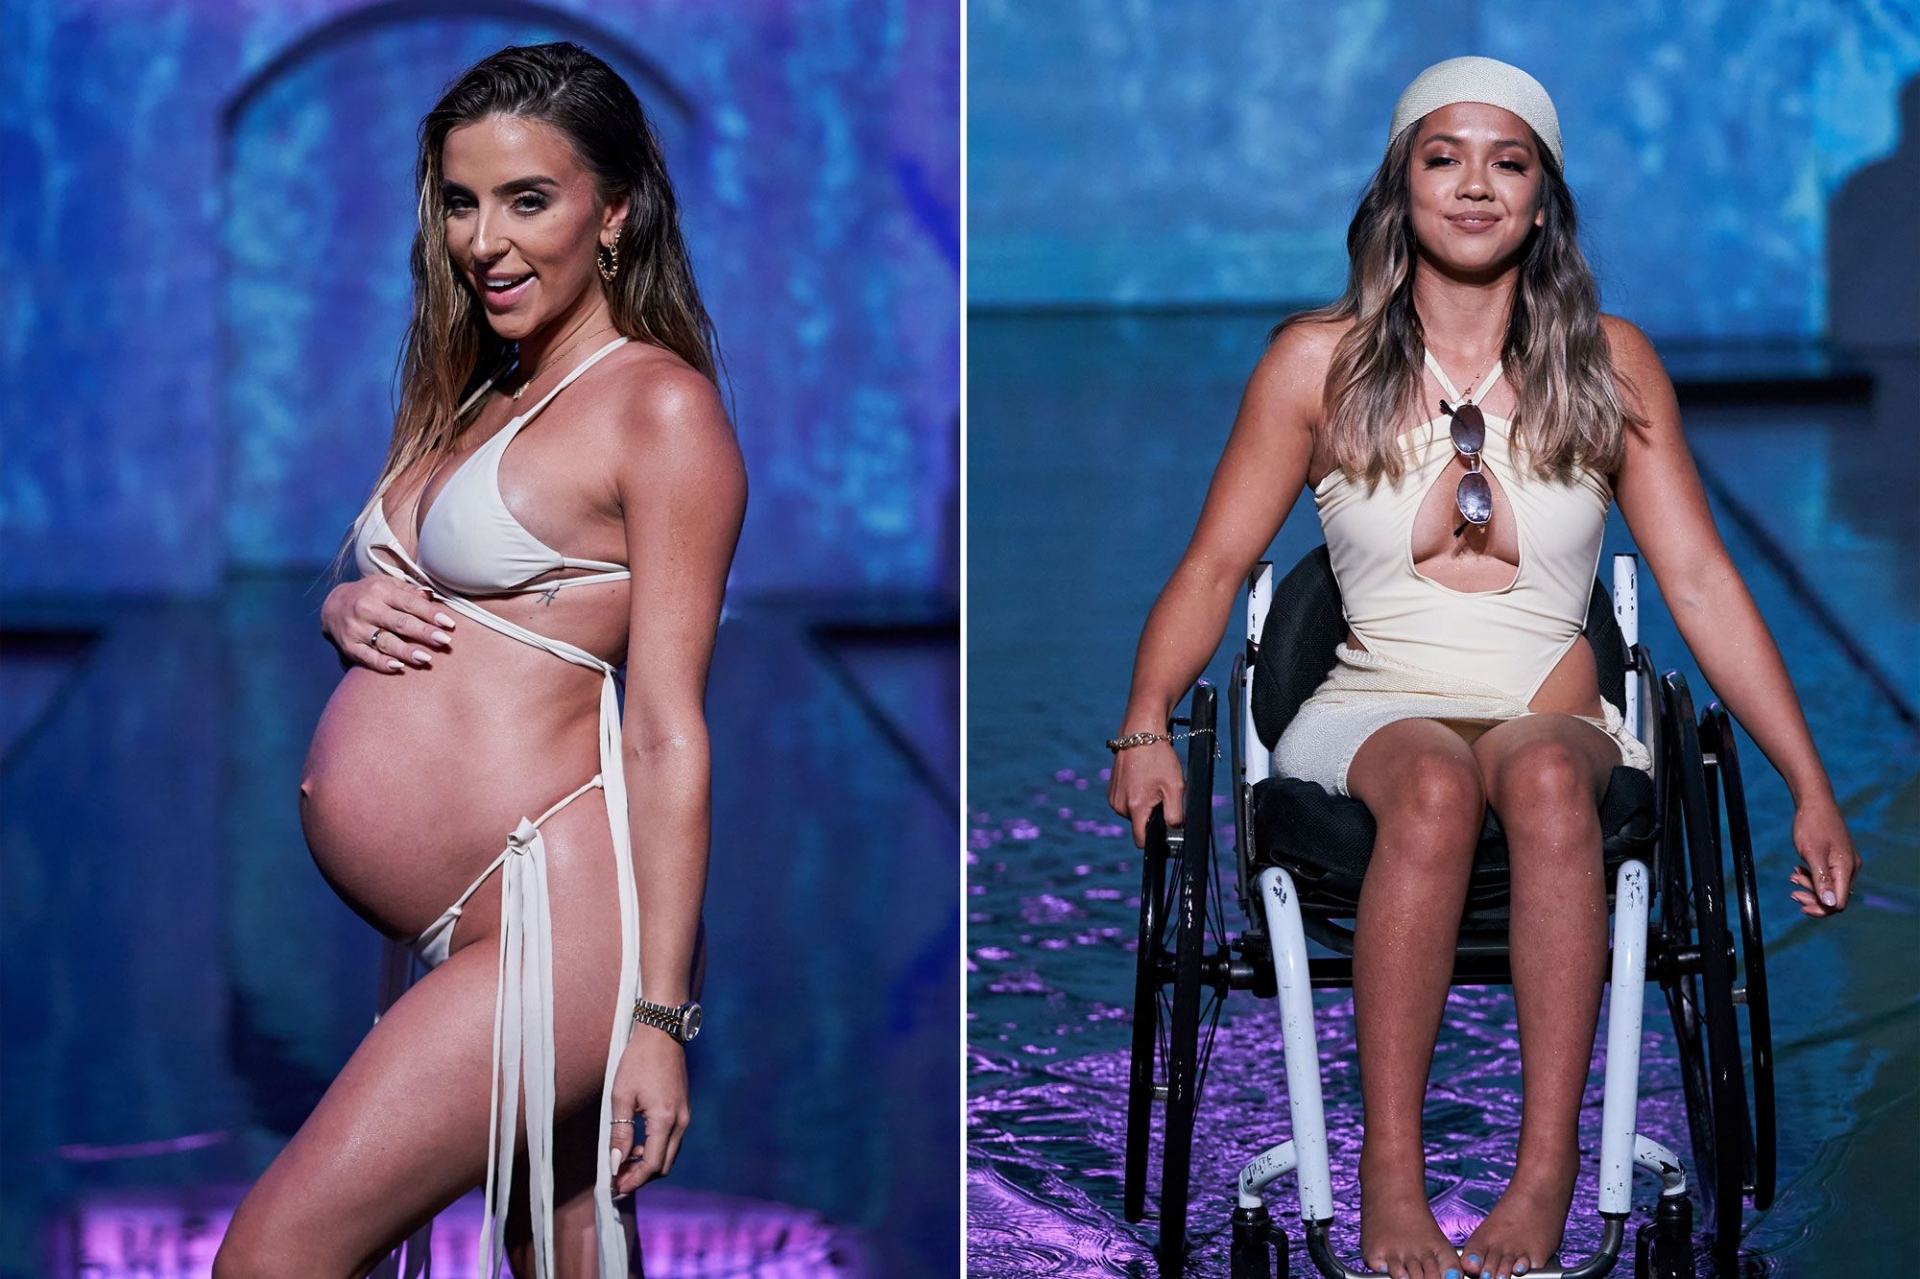 Show diễn bikini của nhãn hàng PrettyLittleThing đã thu hút sự chú ý của công chúng khi đưa những người mẫu với vóc dáng khác nhau lên sàn catwalk